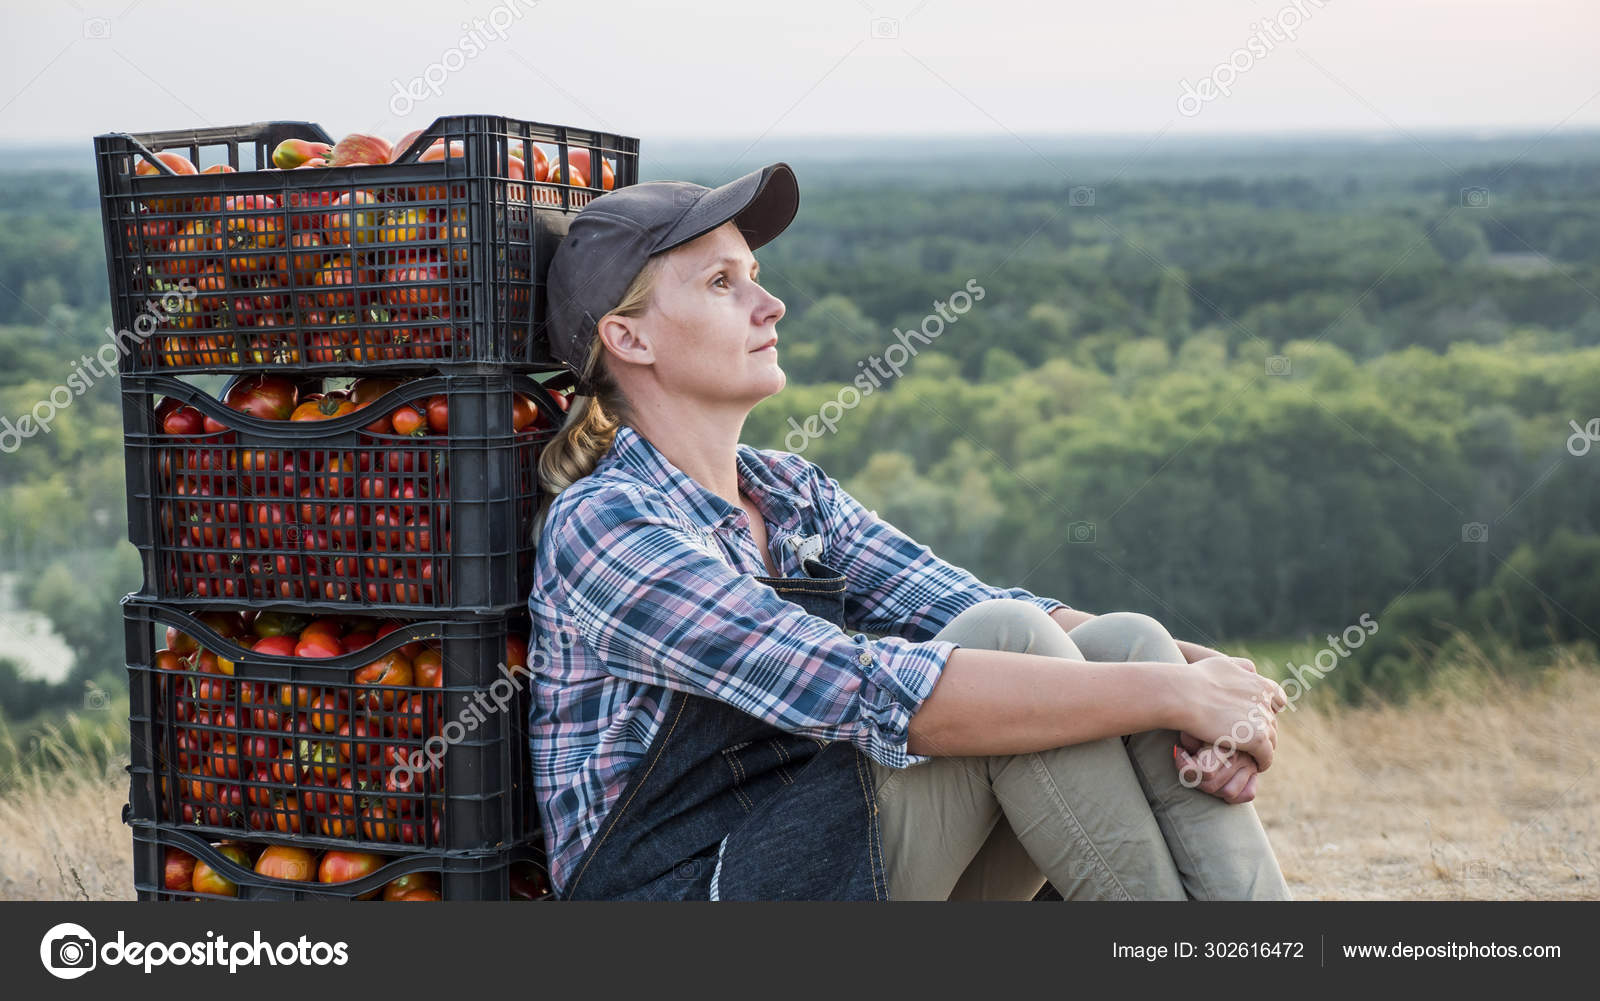 Bäuerin ruht sich nach der Arbeit aus, sitzt neben Kisten mit Tomaten -  Stockfotografie: lizenzfreie Fotos © StockSeller 302616472